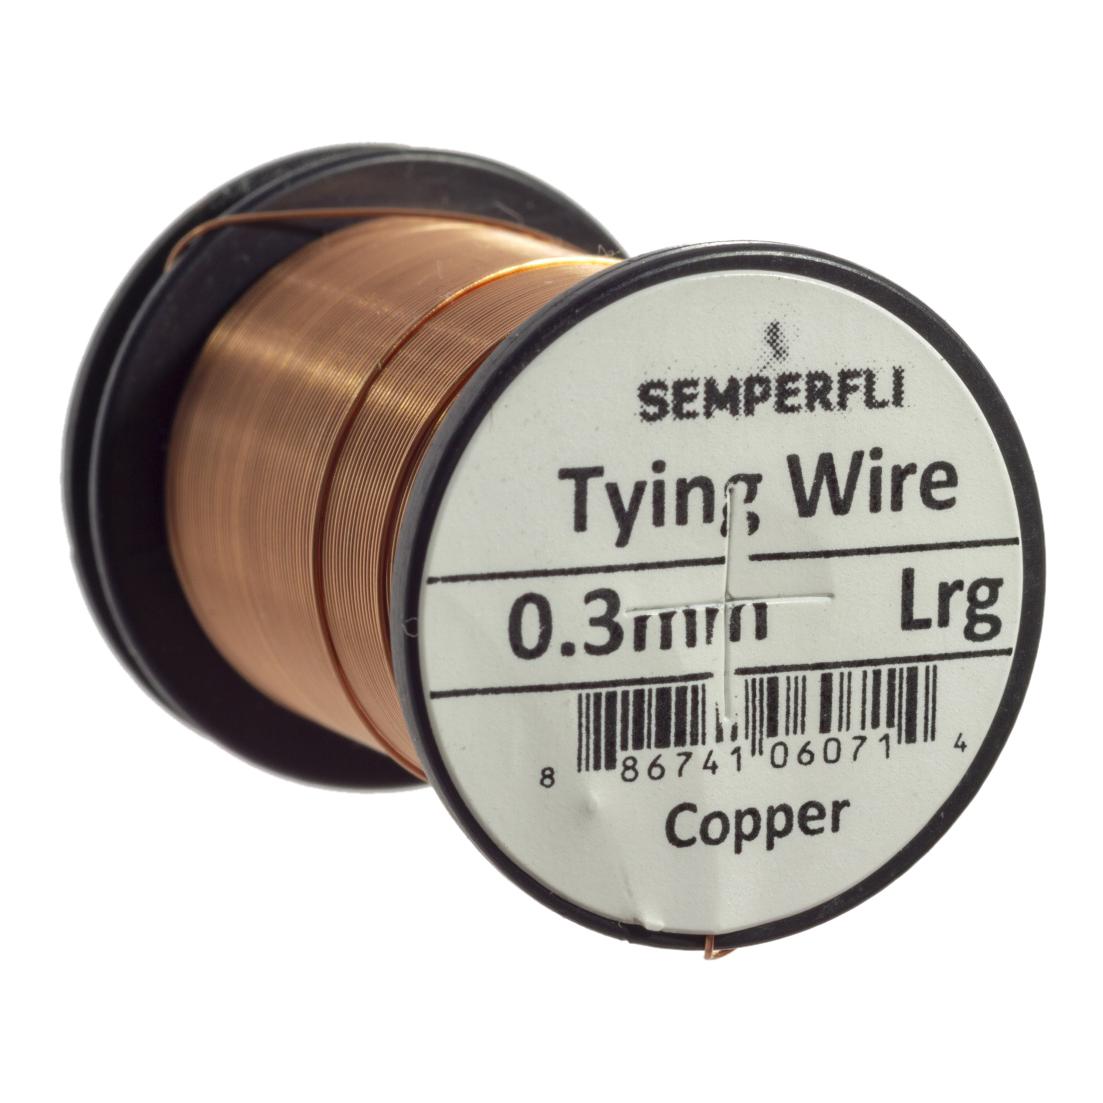 Semperfli Tying Wire - Copper